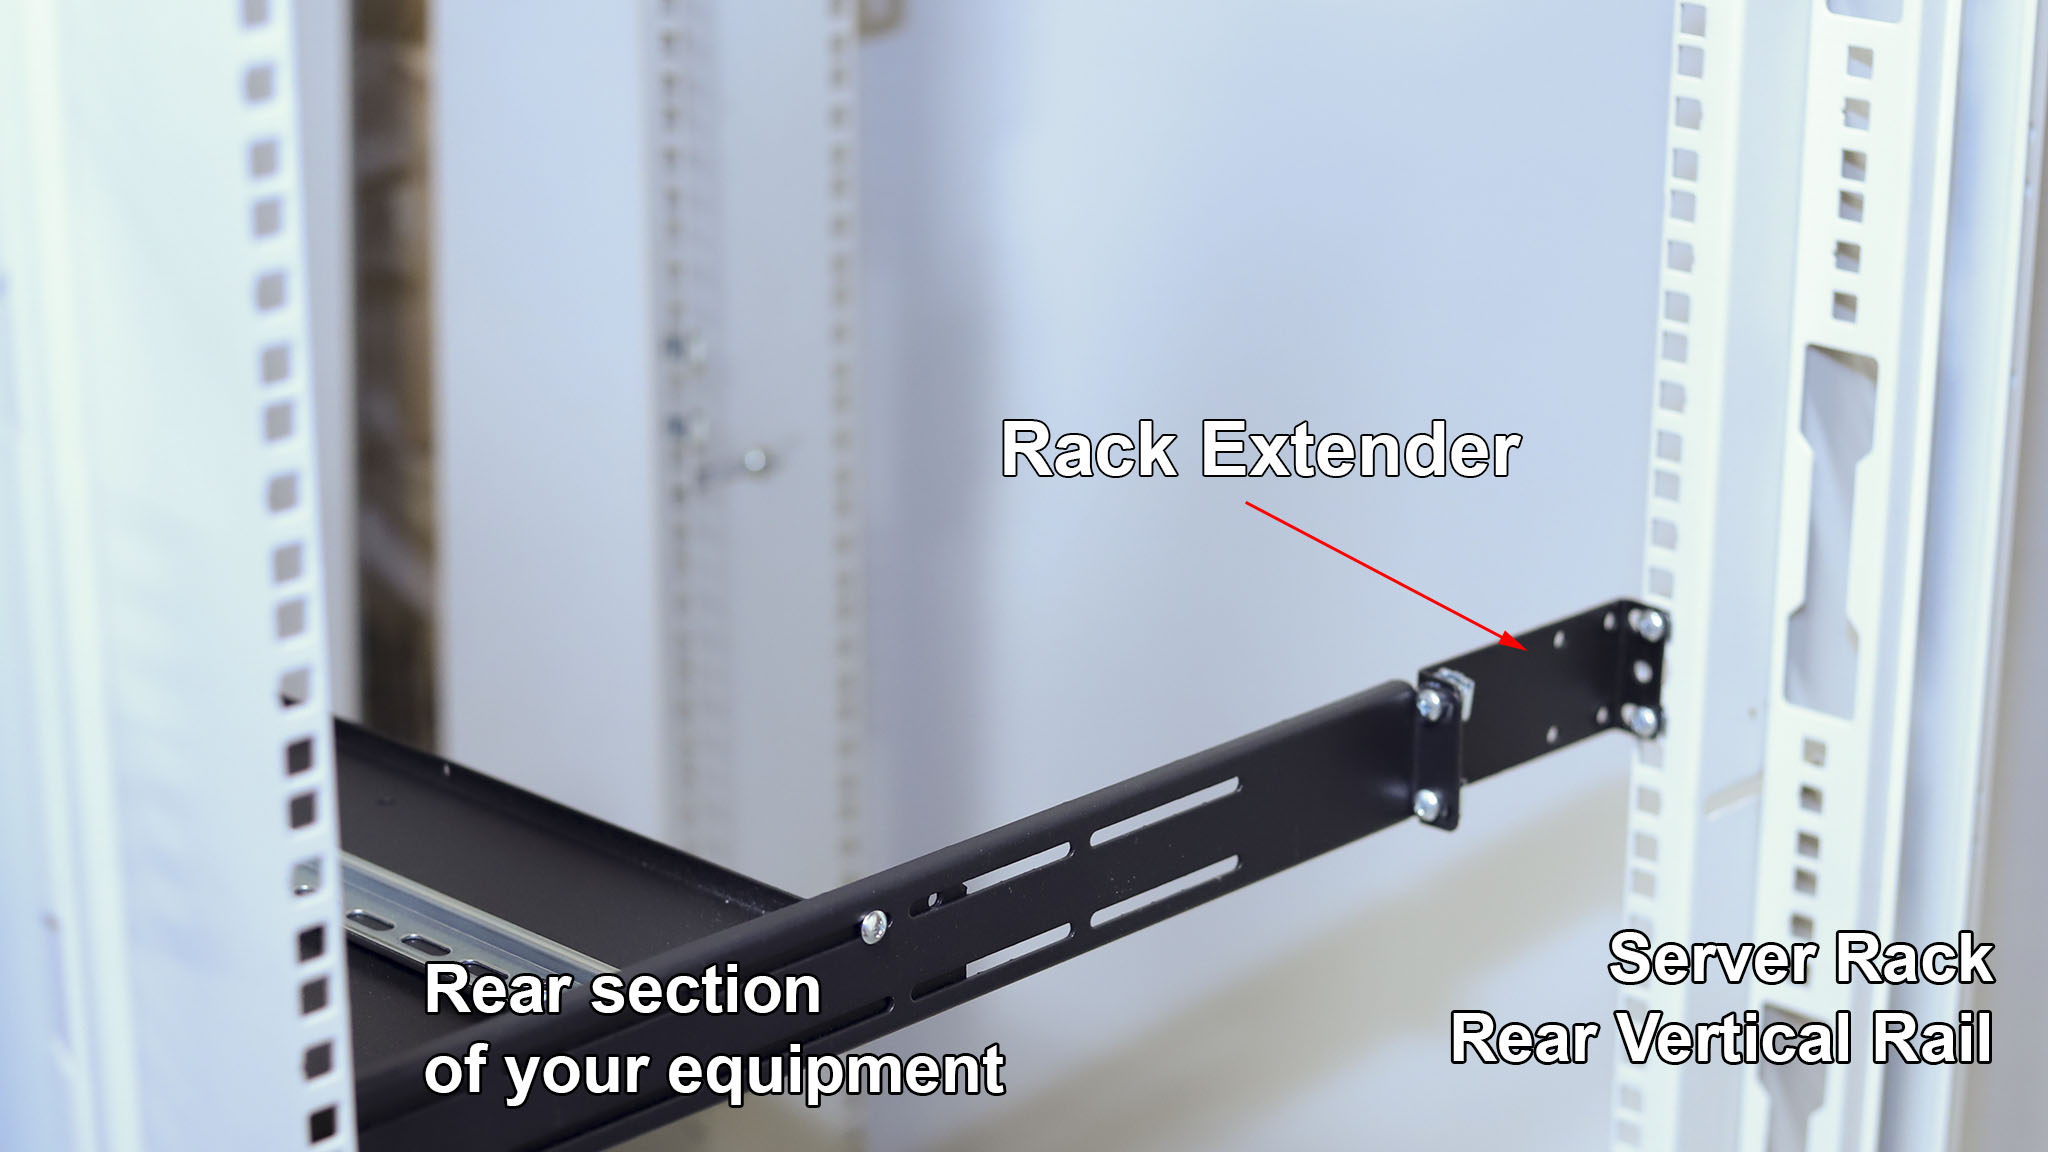 What is IAB106V10-2U rack extender